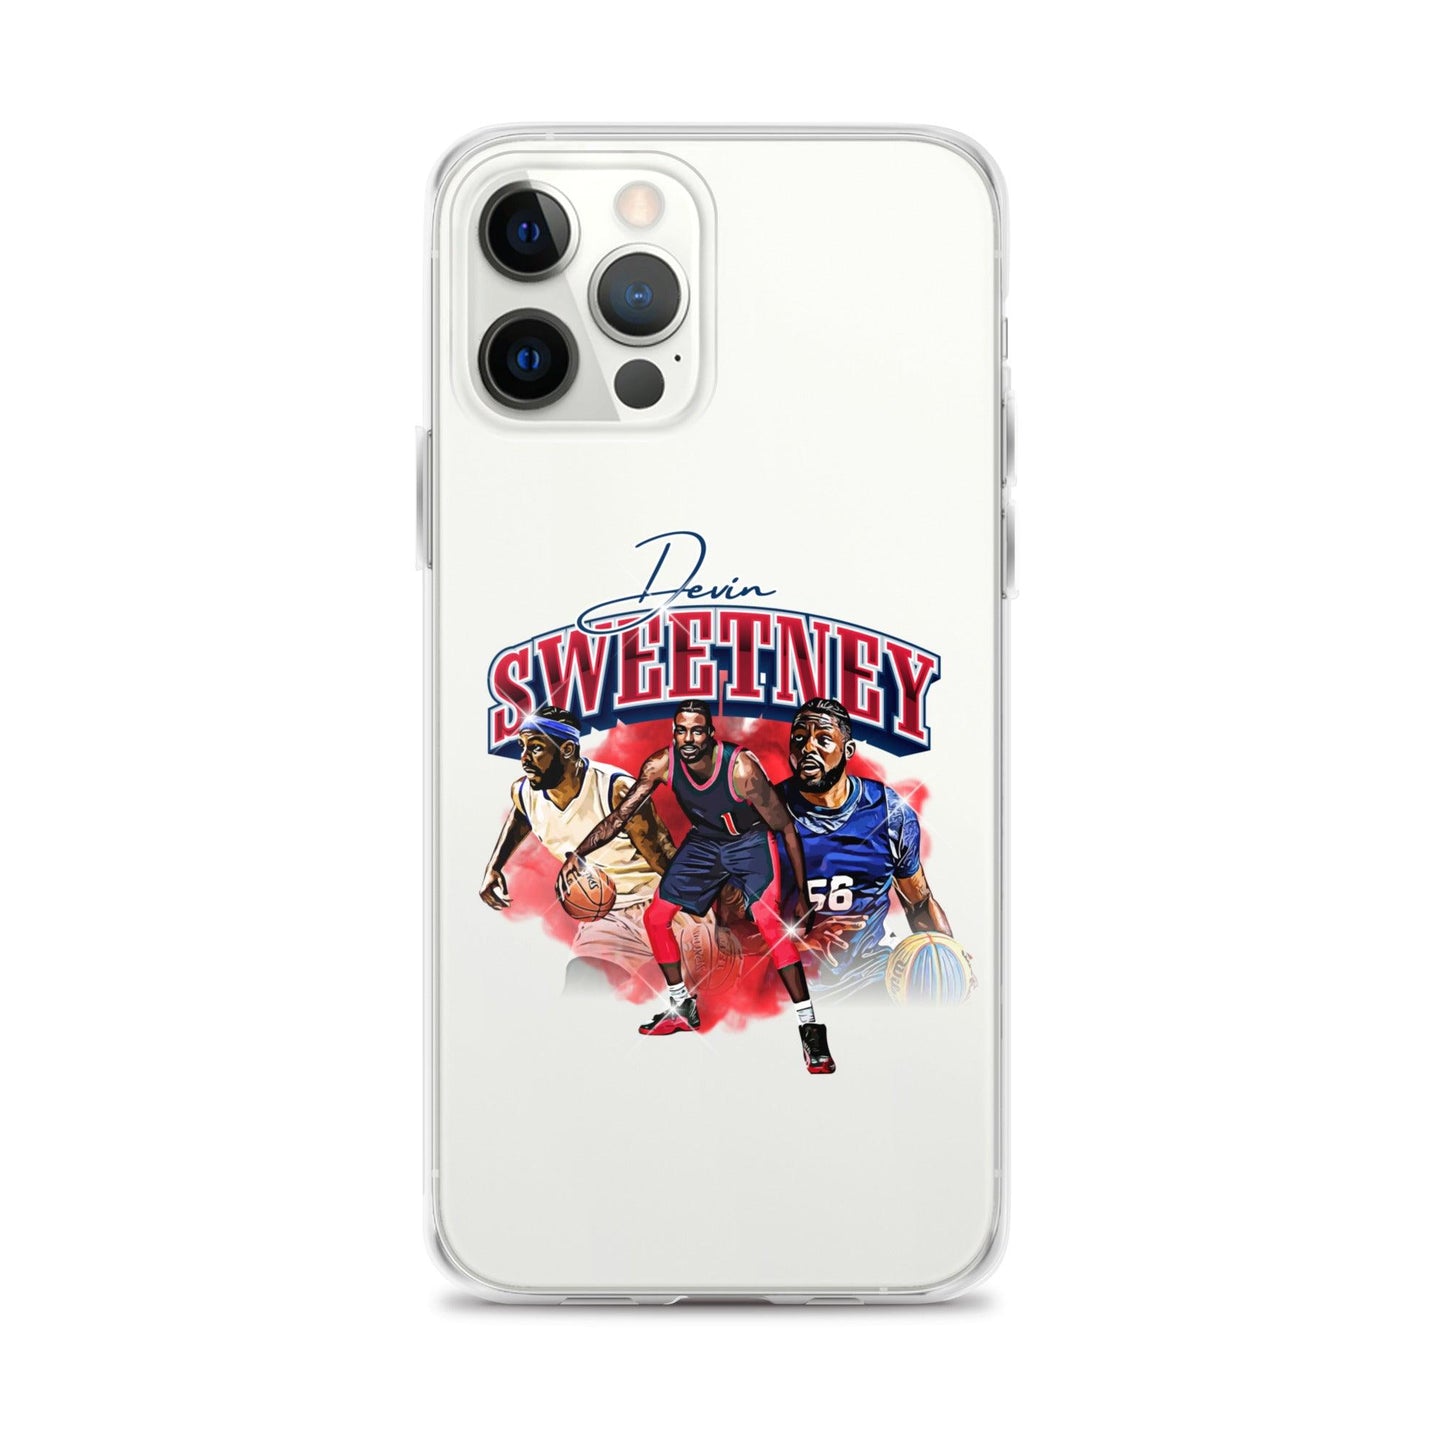 Devin Sweetney "Legacy" iPhone Case - Fan Arch